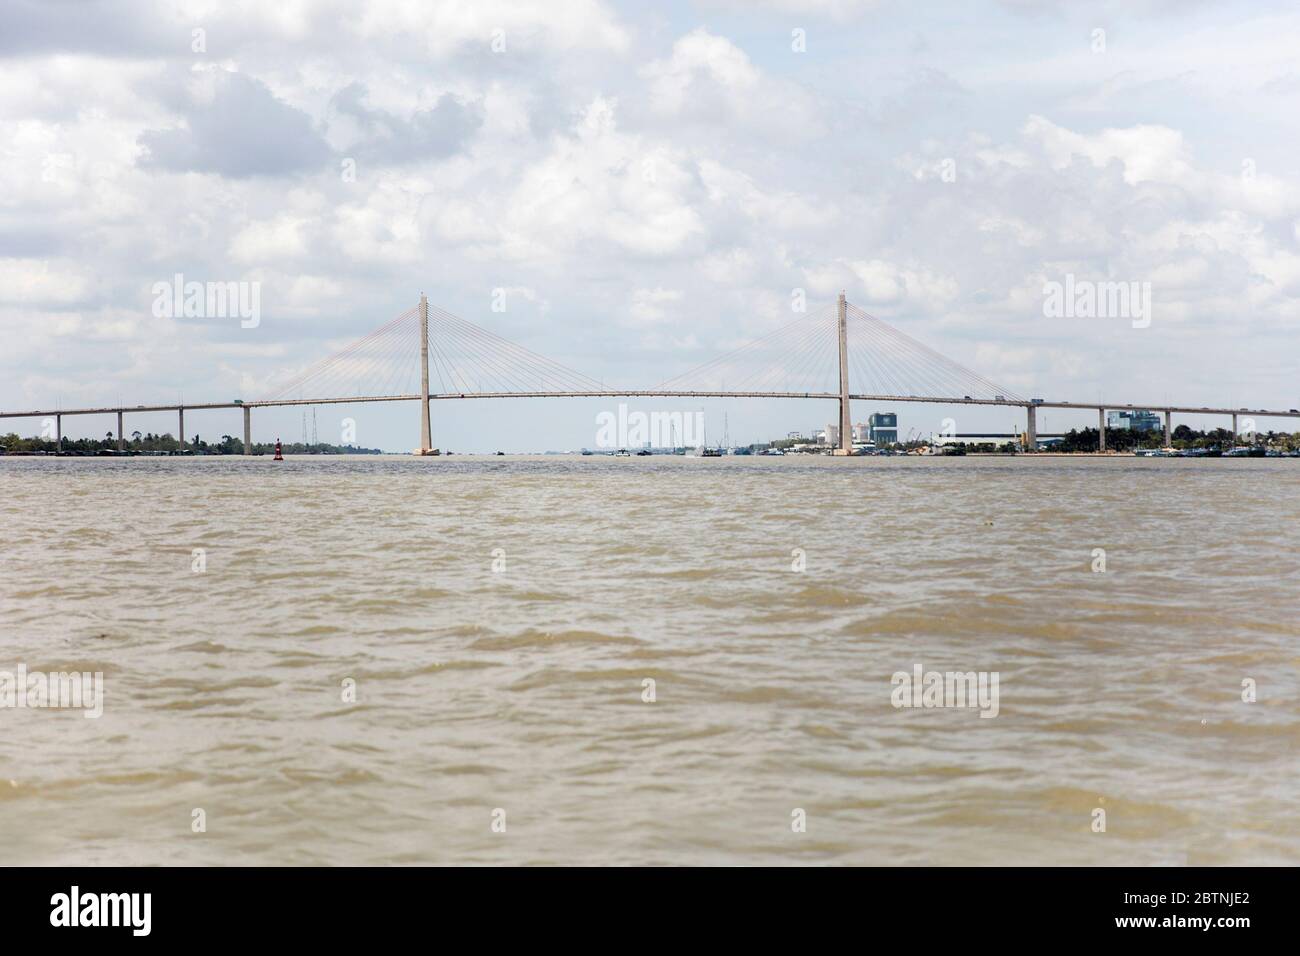 Pont Rach Mieu dans le delta du Mékong, Vietnam. Pont reliant la province de Tien Giang à la province de Ben Tre. Banque D'Images